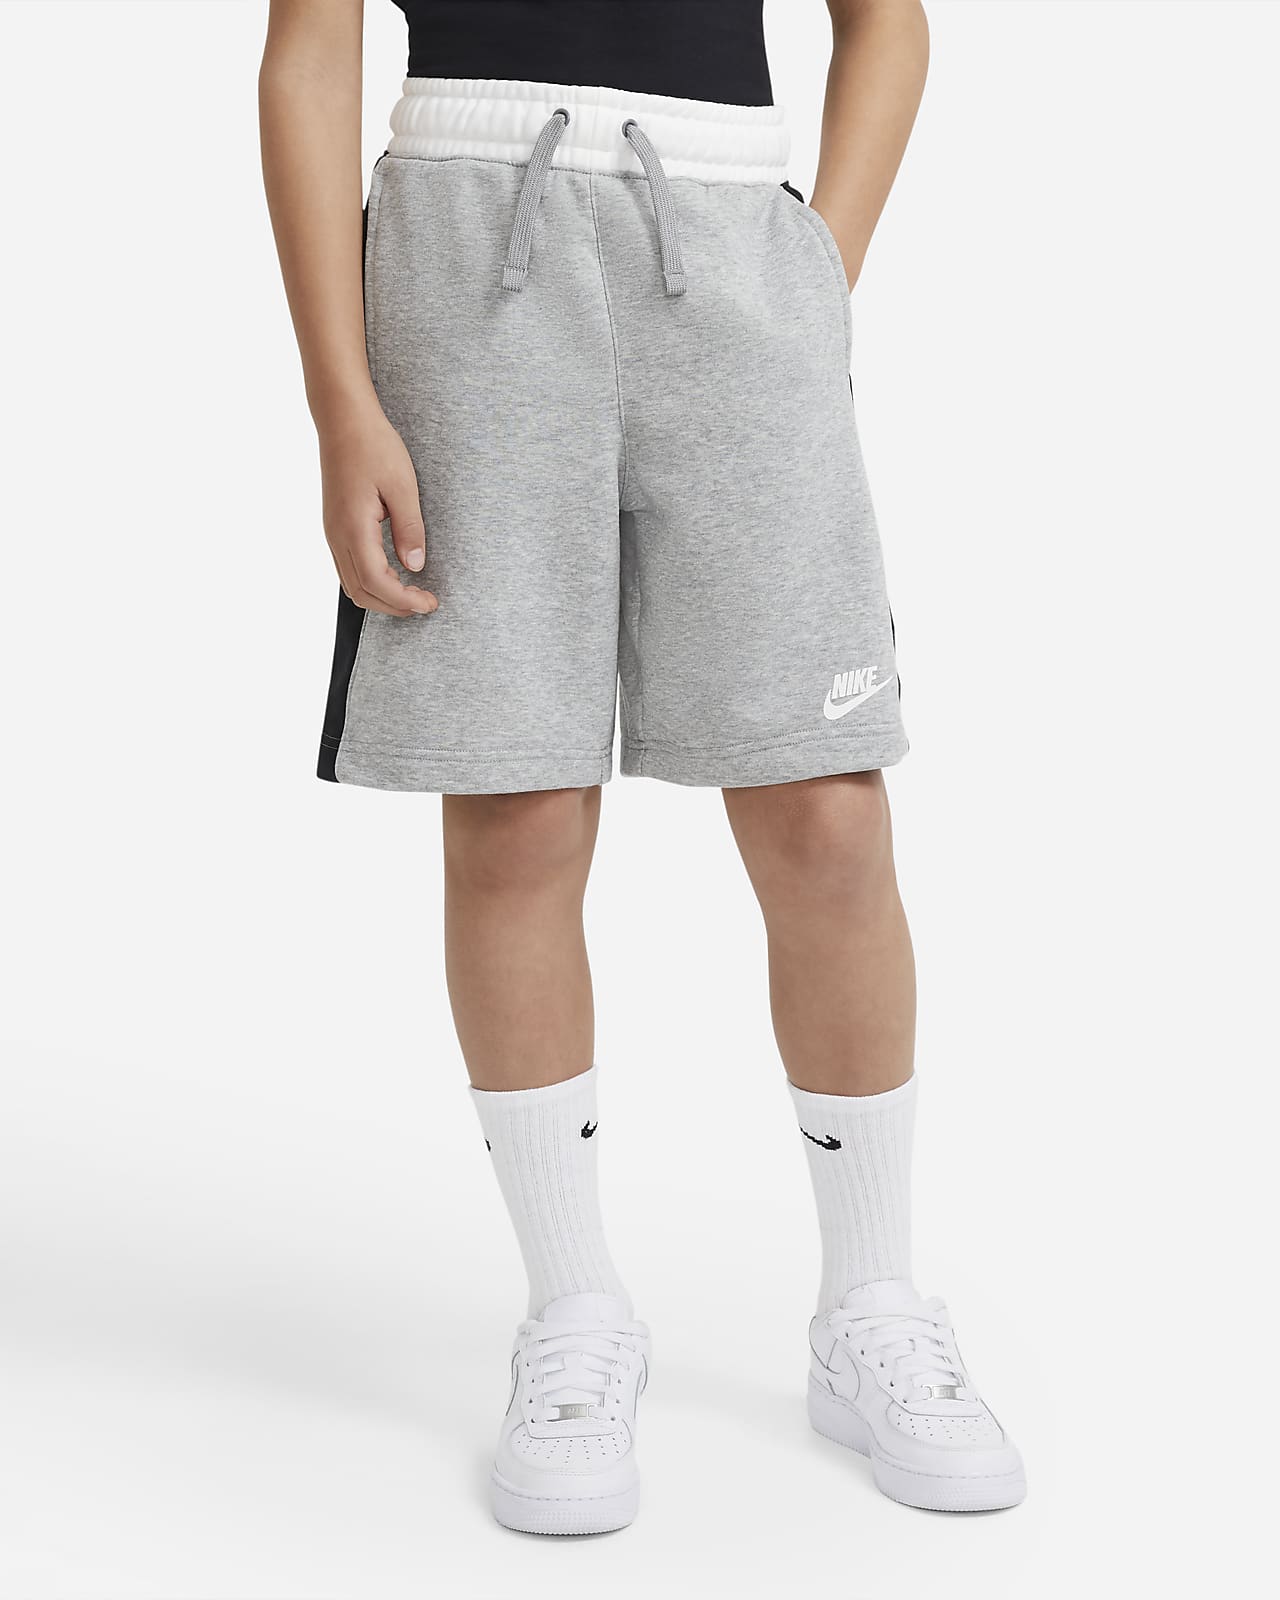 nike boy shorts grey